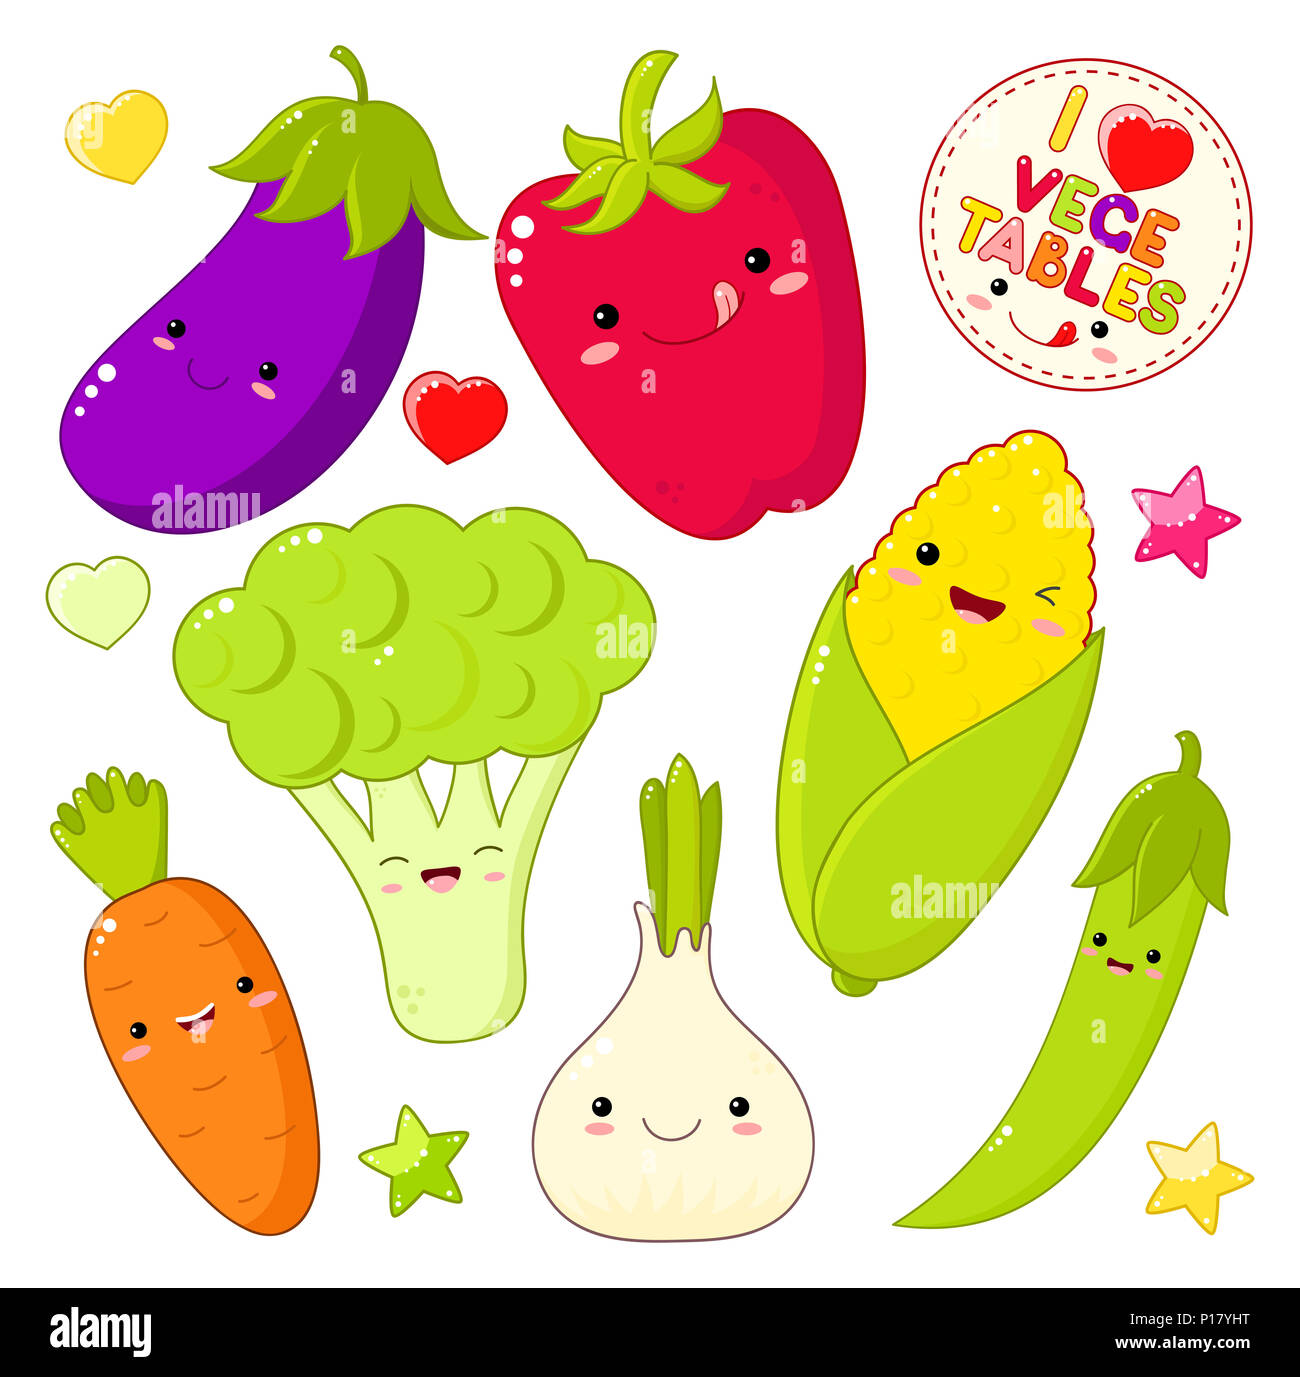 Ensemble d'icônes de légumes cute kawaii style avec sourire et joues roses. Autocollant avec l'inscription J'adore les légumes. L'oignon, carotte, poivron, eggp Banque D'Images